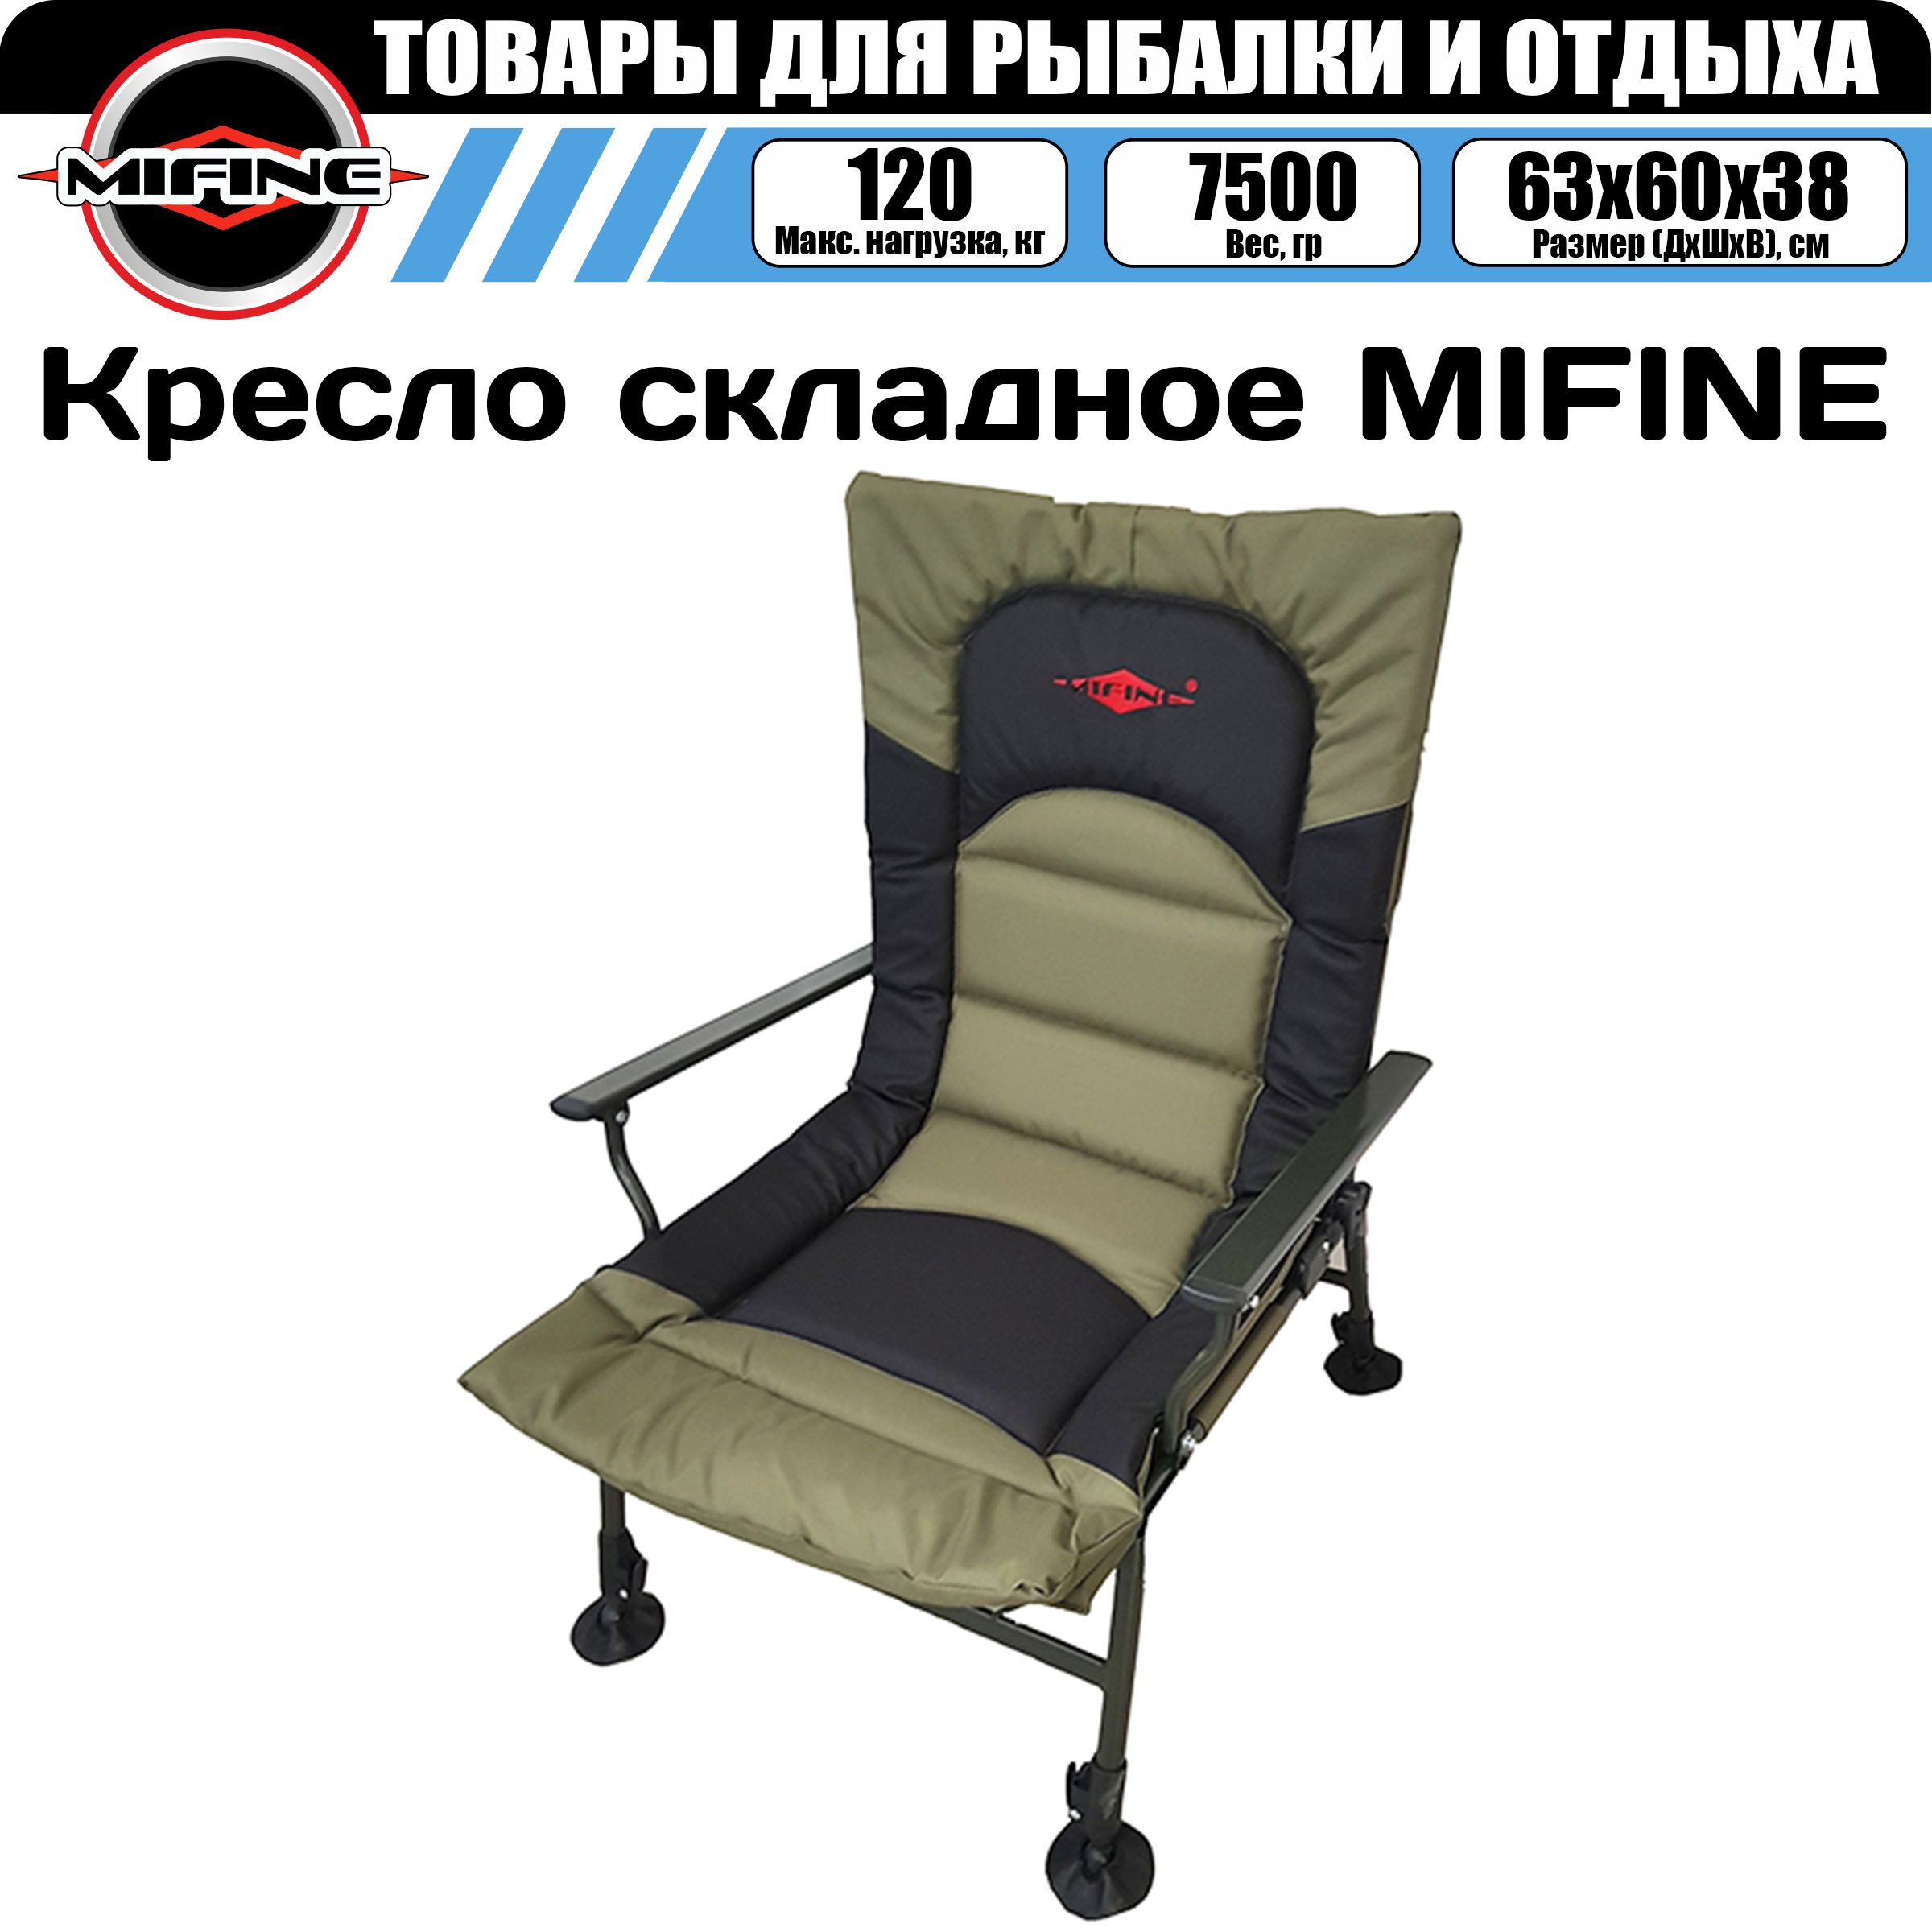 Кресло складное mifine 55071